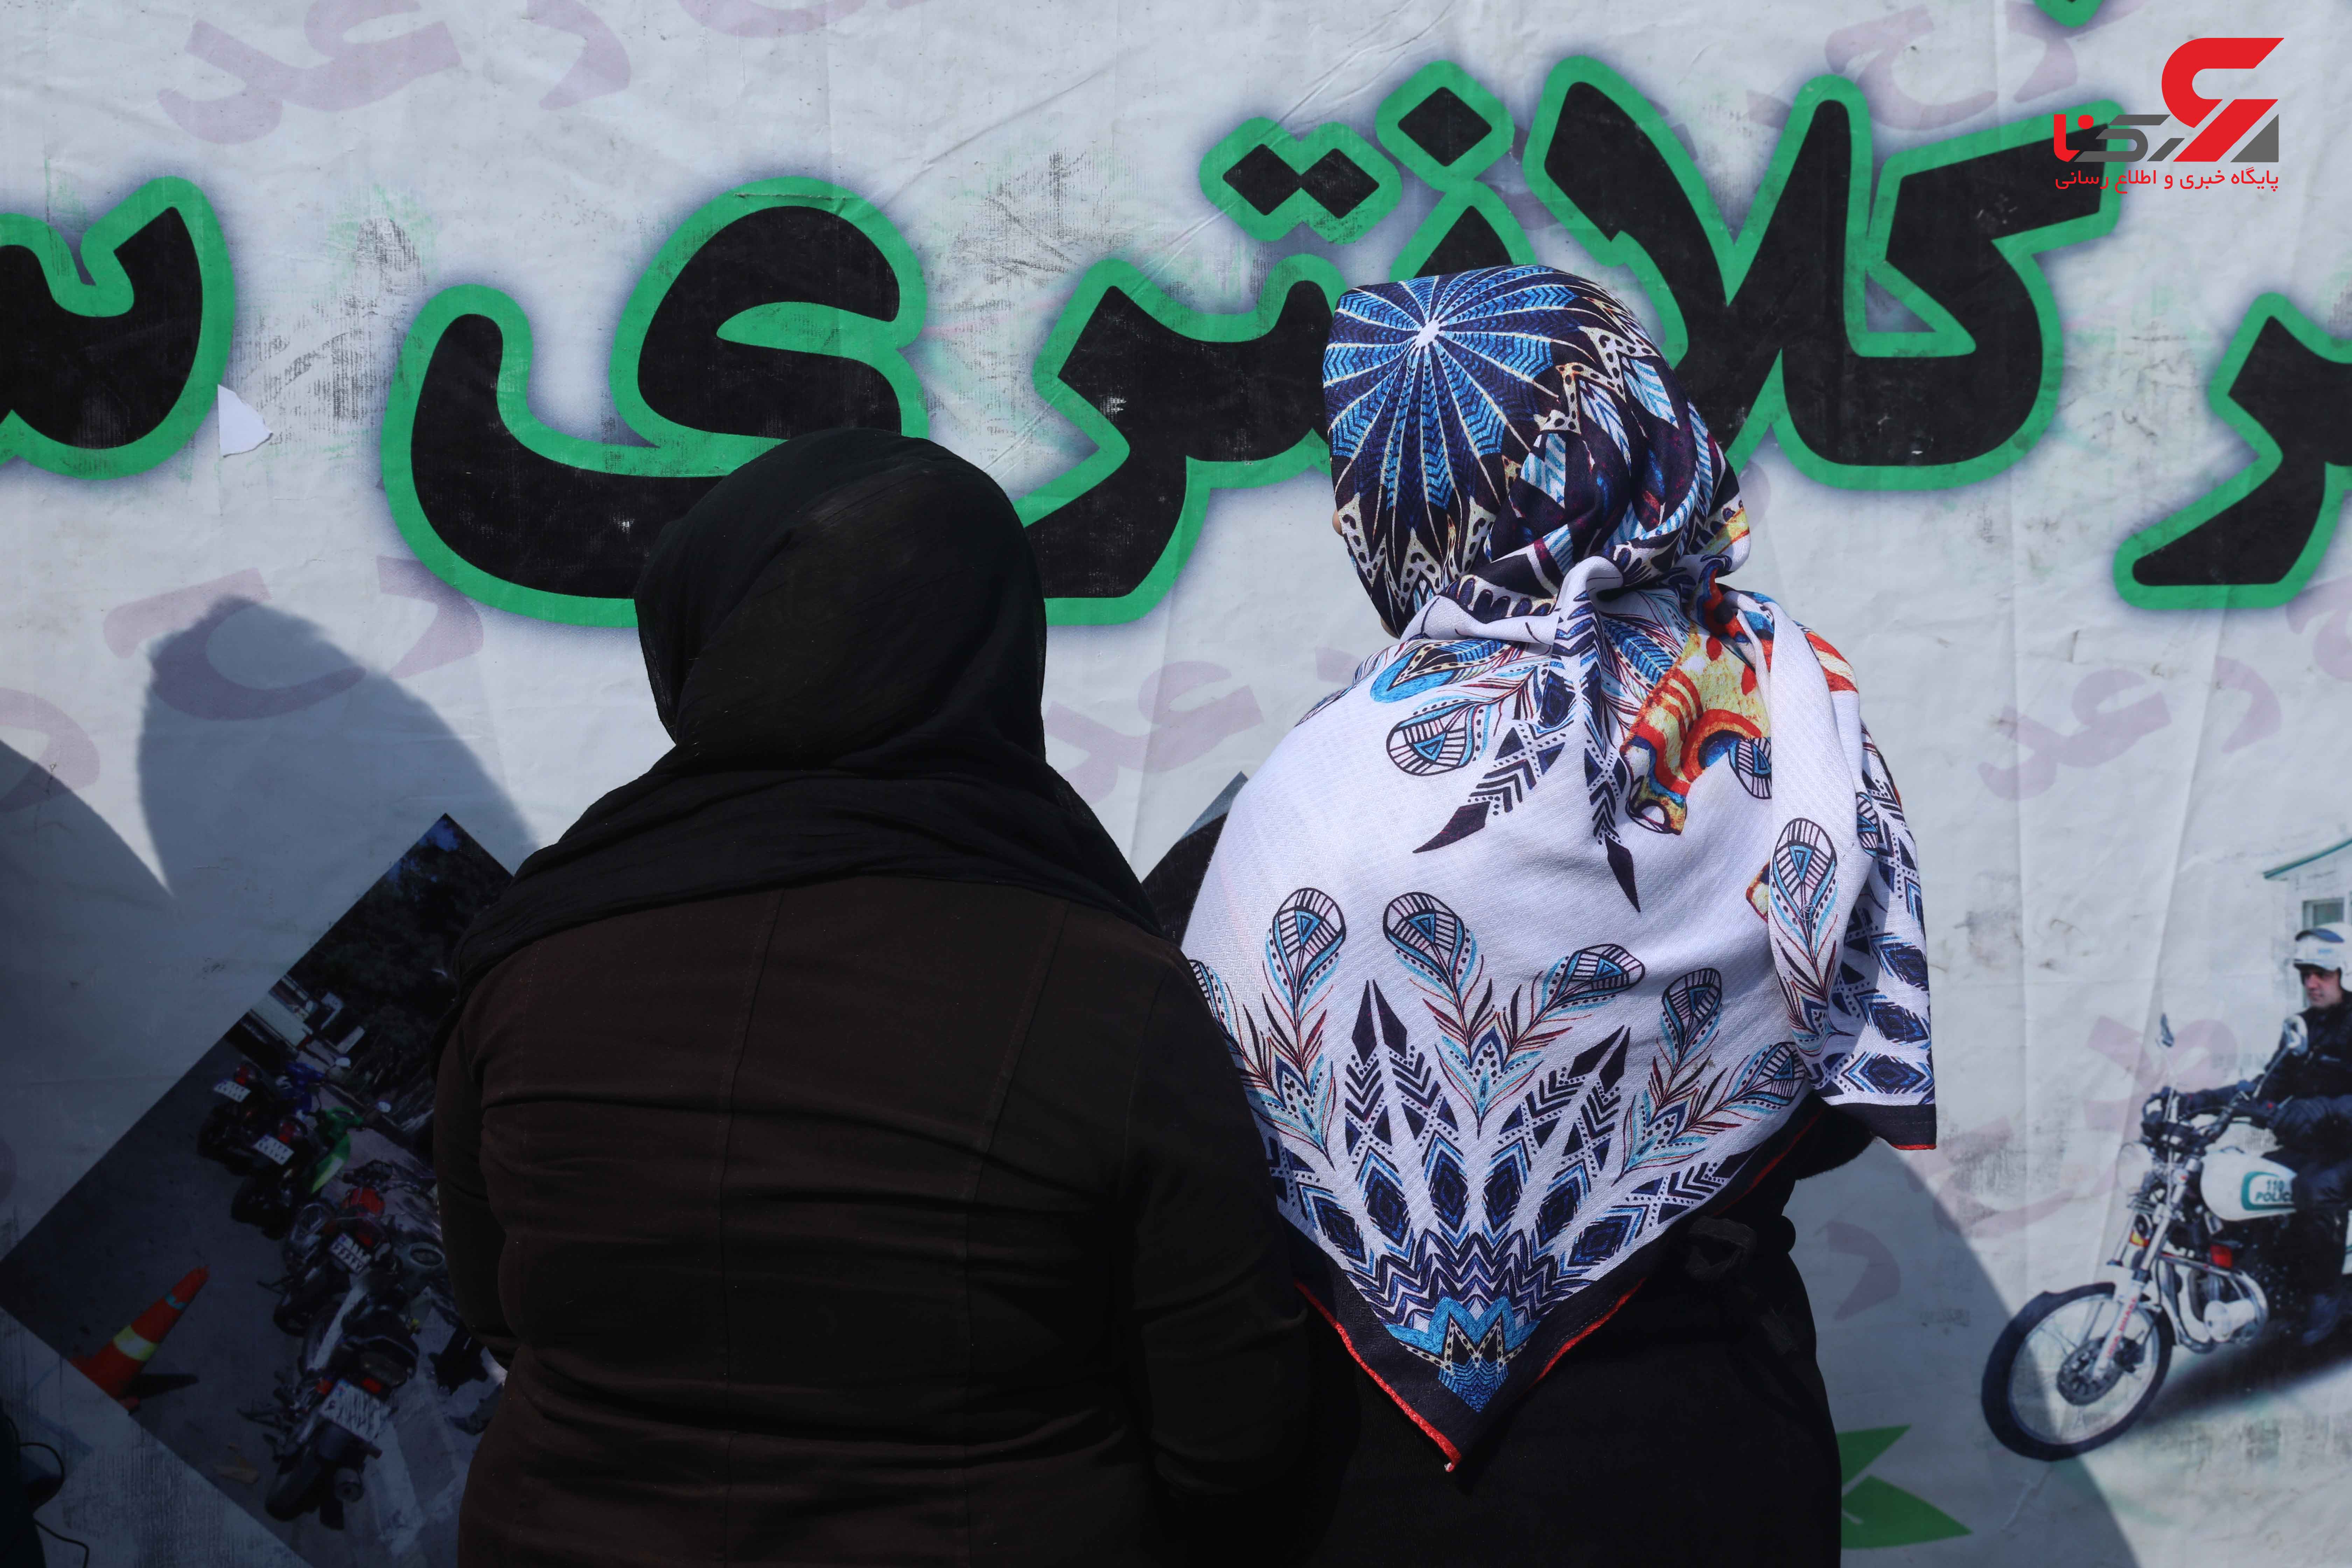 بیست و سومین طرح رعد پلیس پیشگیری پایتخت با تلاش مأموران پلیس پیشگیری تهران بزرگ اجرا شد.